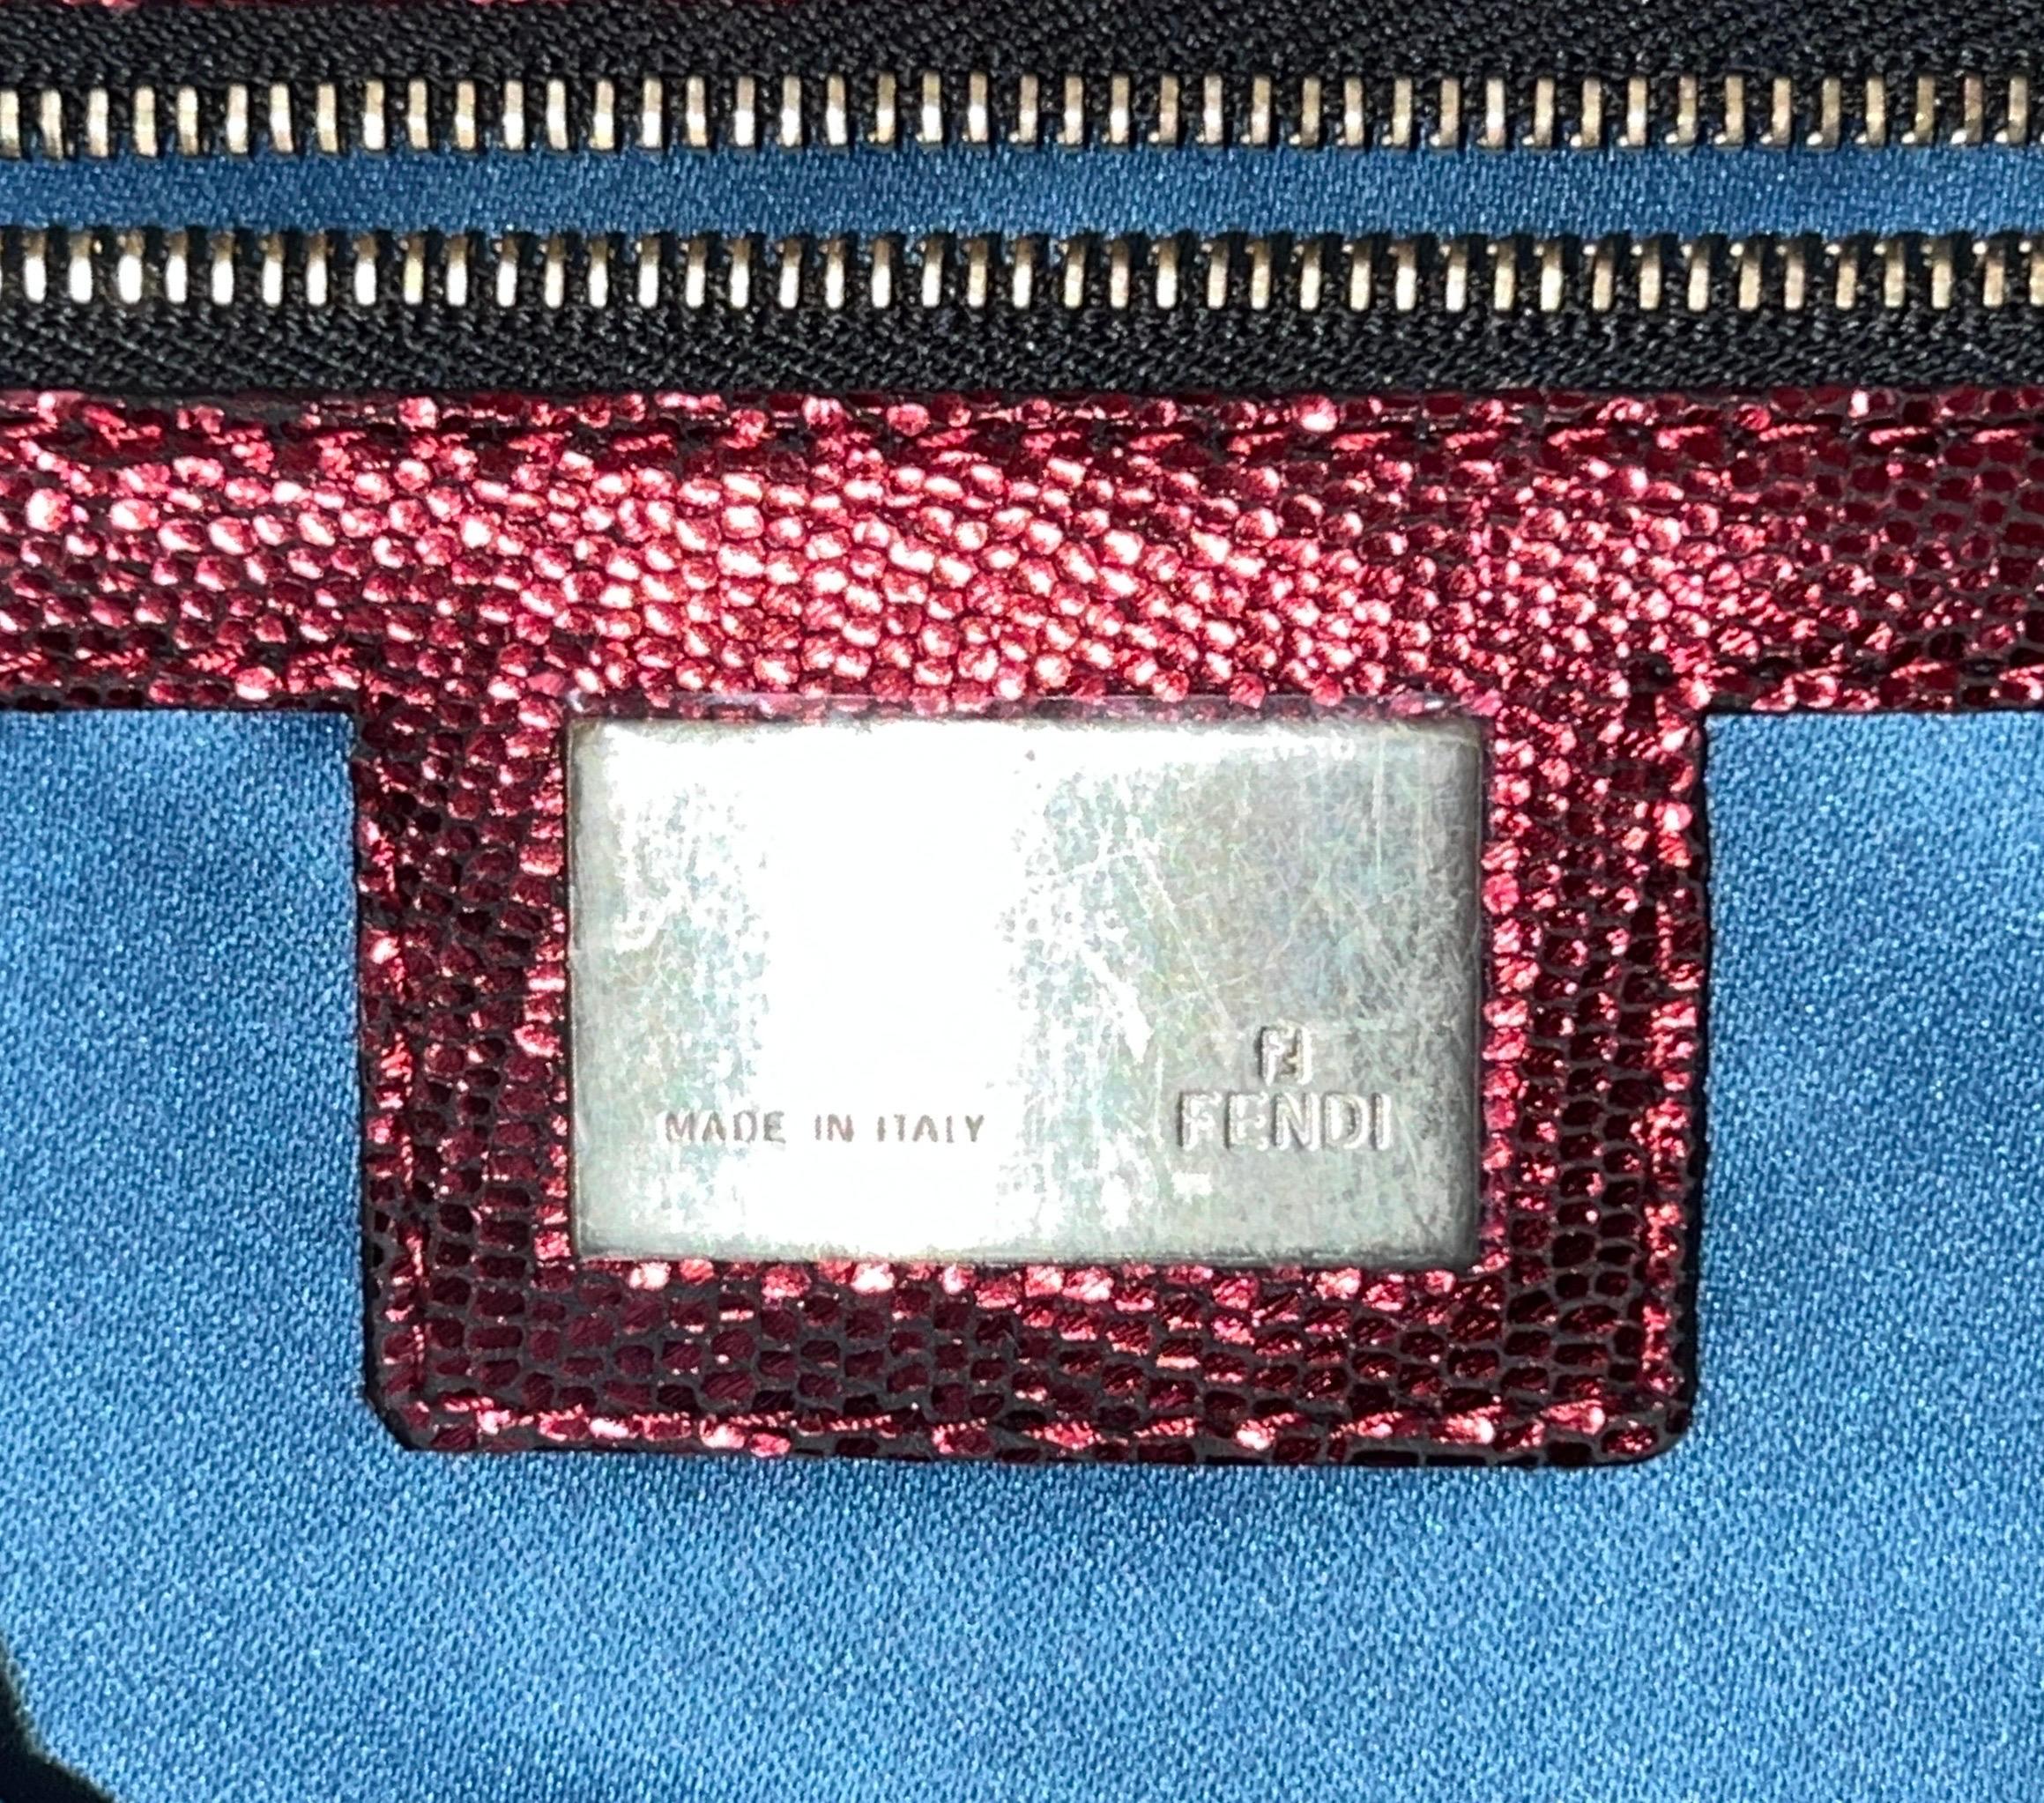 UNWORN Fendi Embroidered Golden Baguette Handbag Flap Bag Clutch - Full Set 4